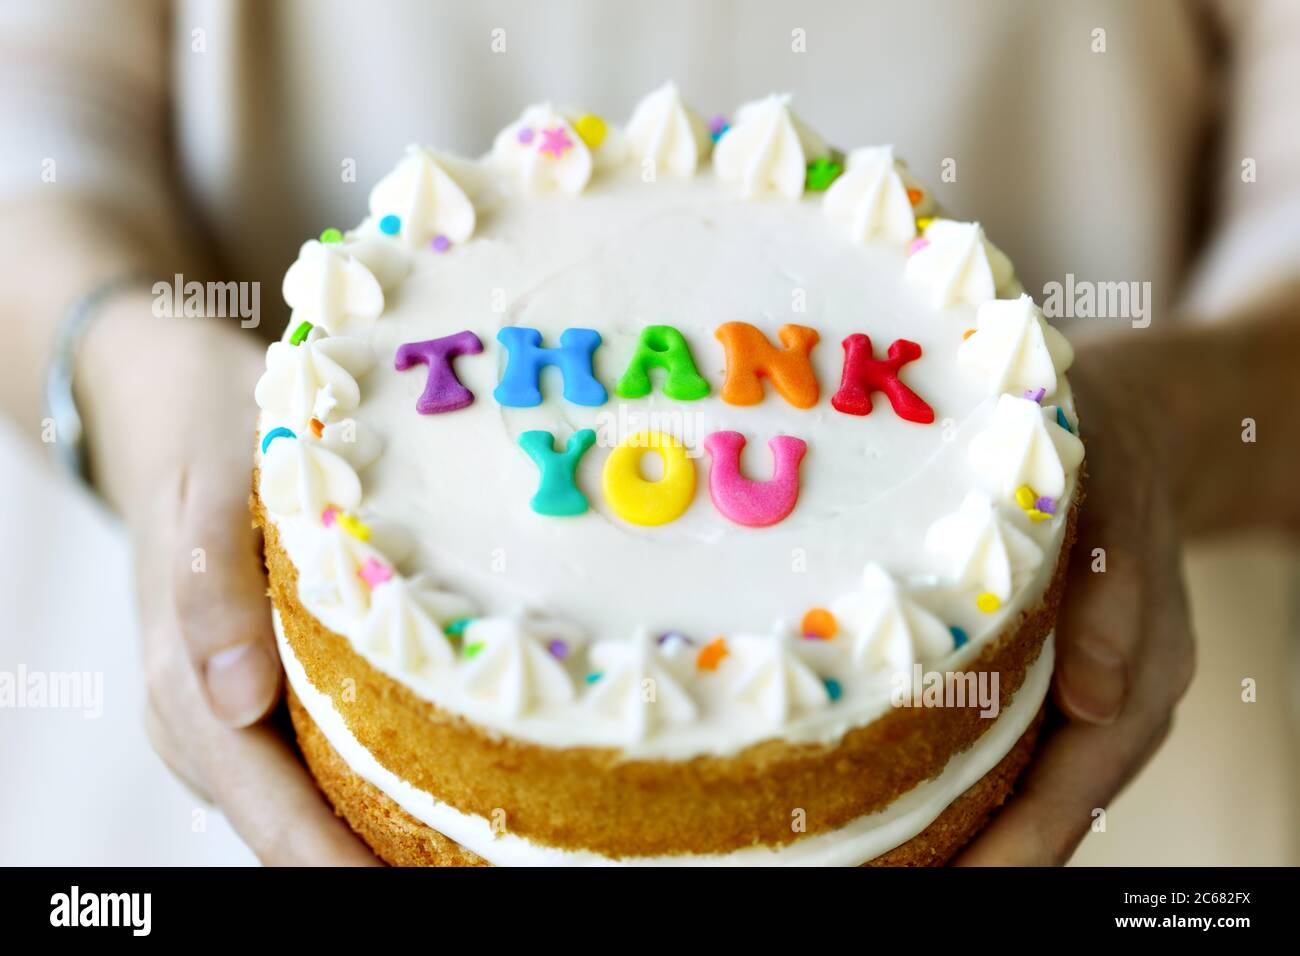 Hände halten Kuchen mit bunten Regenbogen Buchstaben Rechtschreibung danke Stockfoto